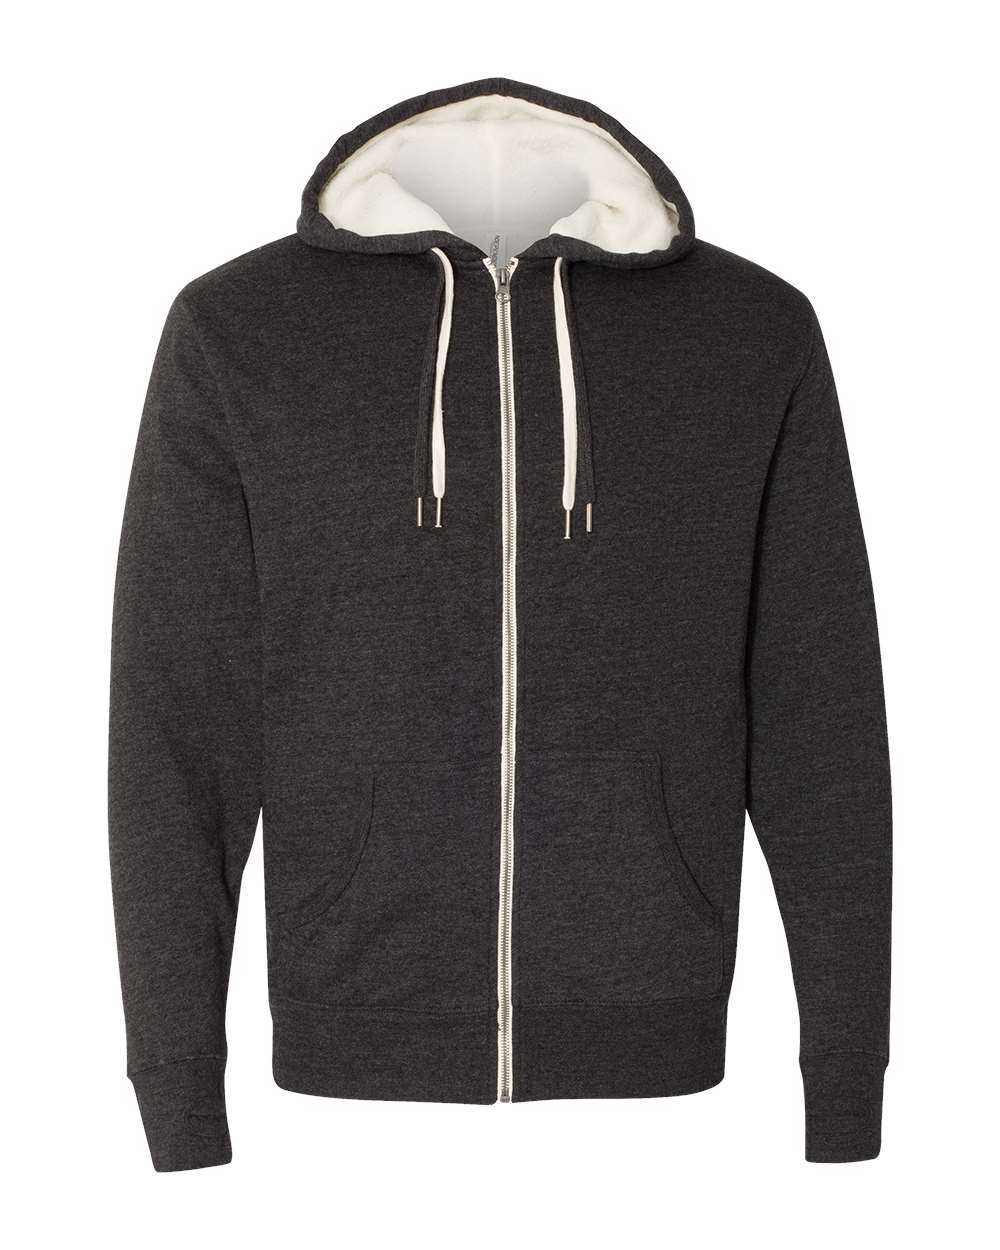 Unisex Sherpa-Lined Hooded Sweatshirt-